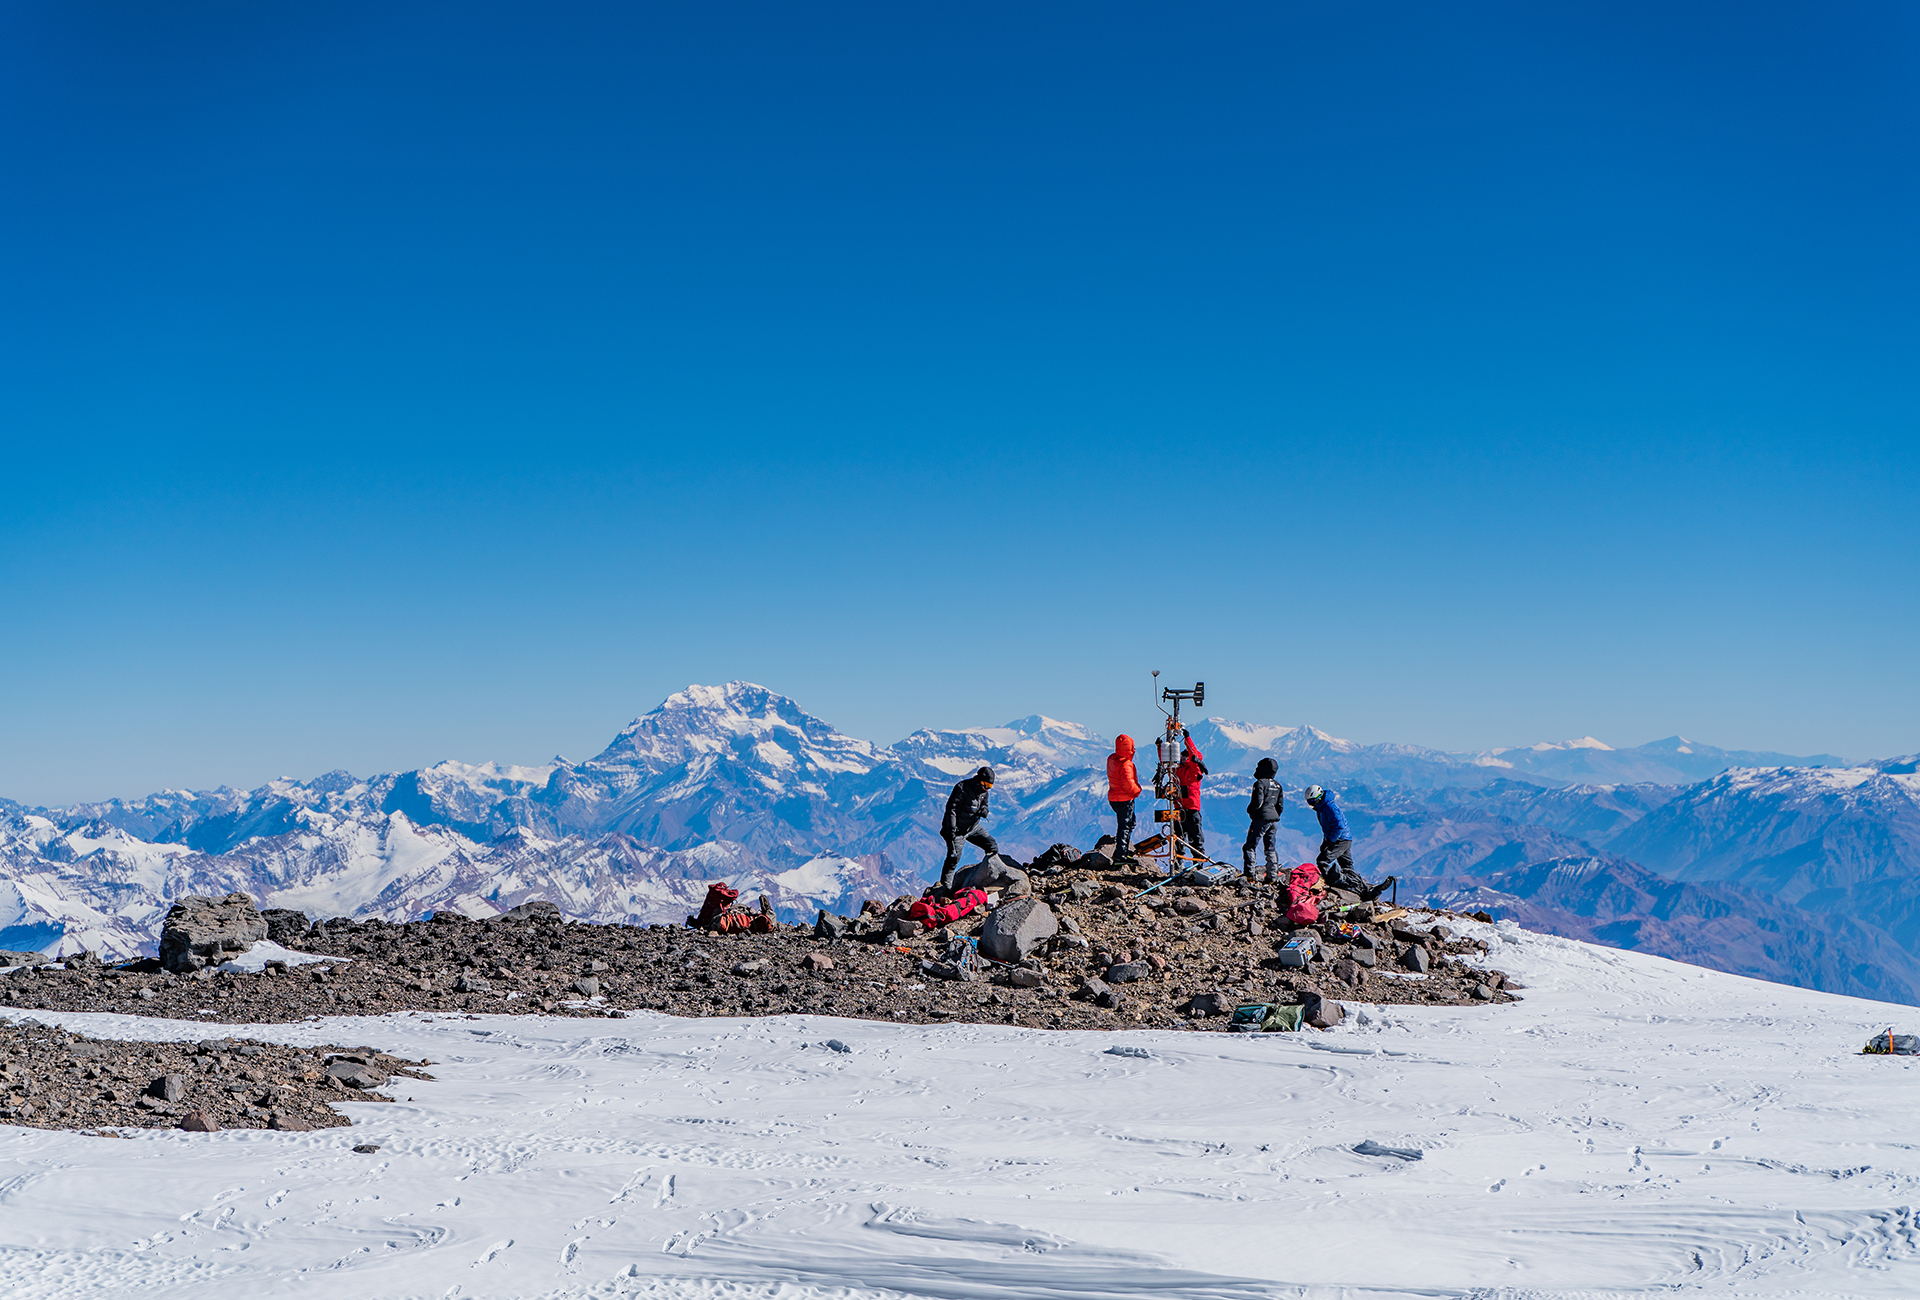 Dans le cadre de son initiative Perpetual Planet, Rolex a soutenu une expédition visant à installer une station météorologique sur l'une des plus hautes montagnes d'Amérique du Sud - Armando Vega, National Geographic 2021